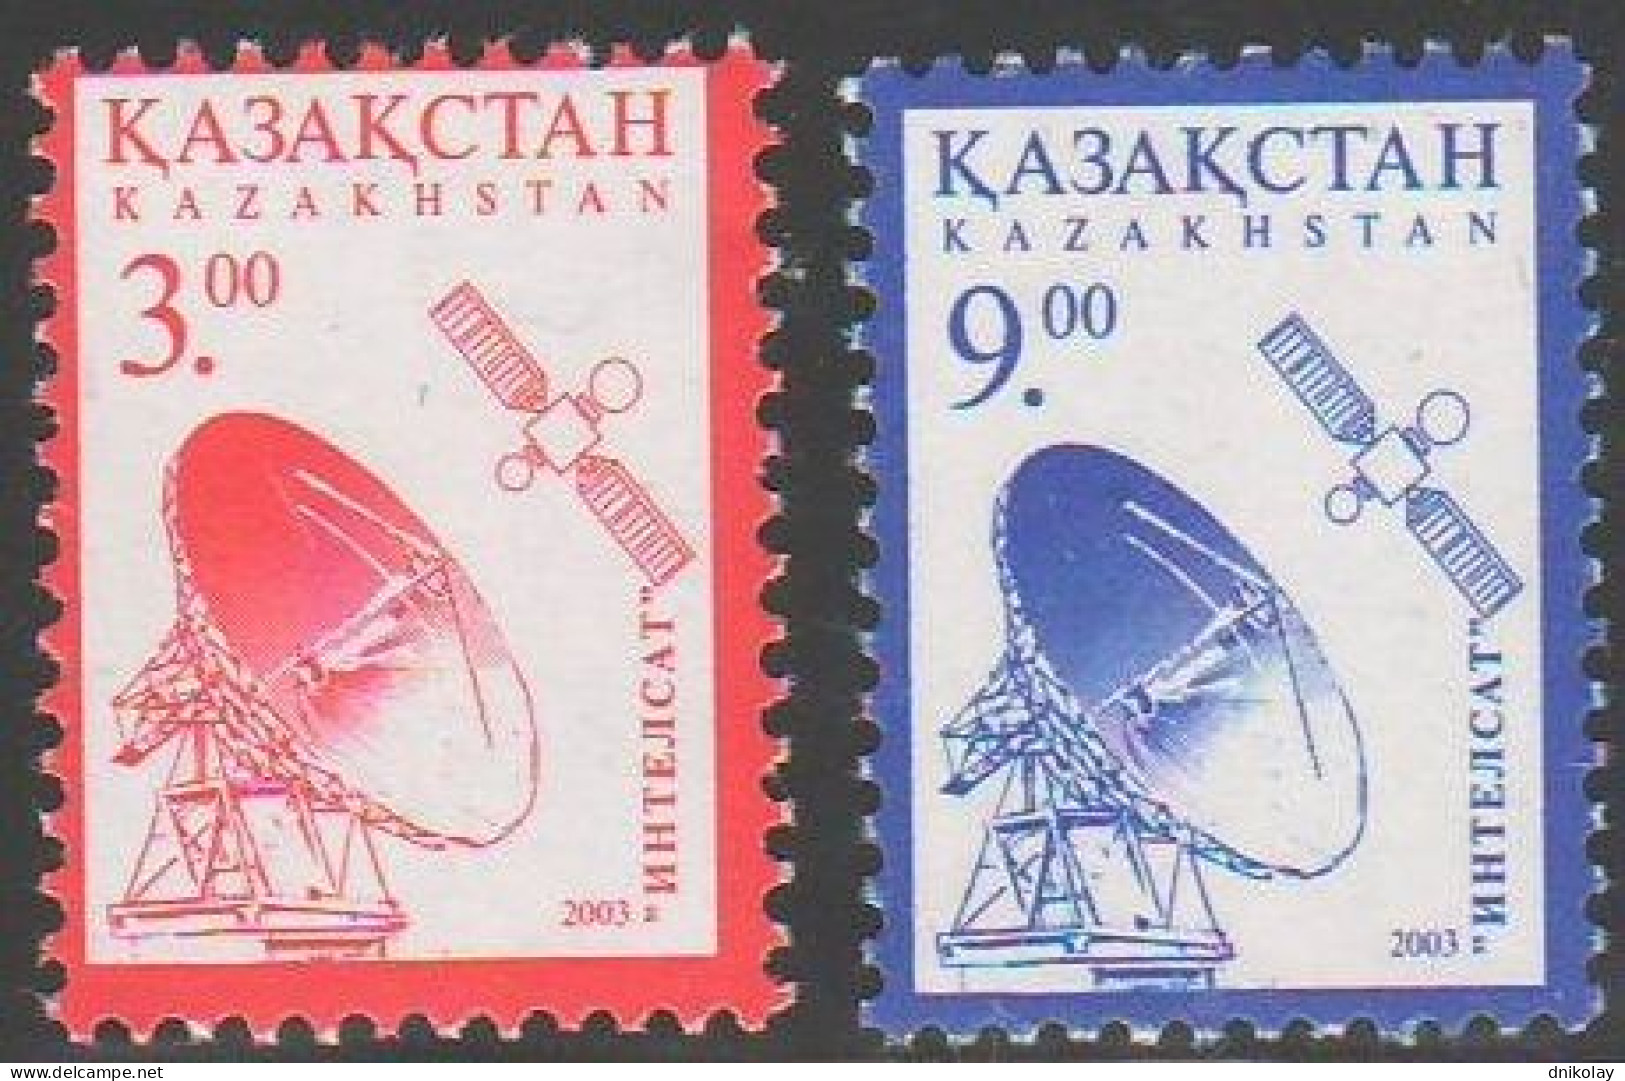 2003 441 Kazakhstan Space Satellite Station MNH - Kazachstan